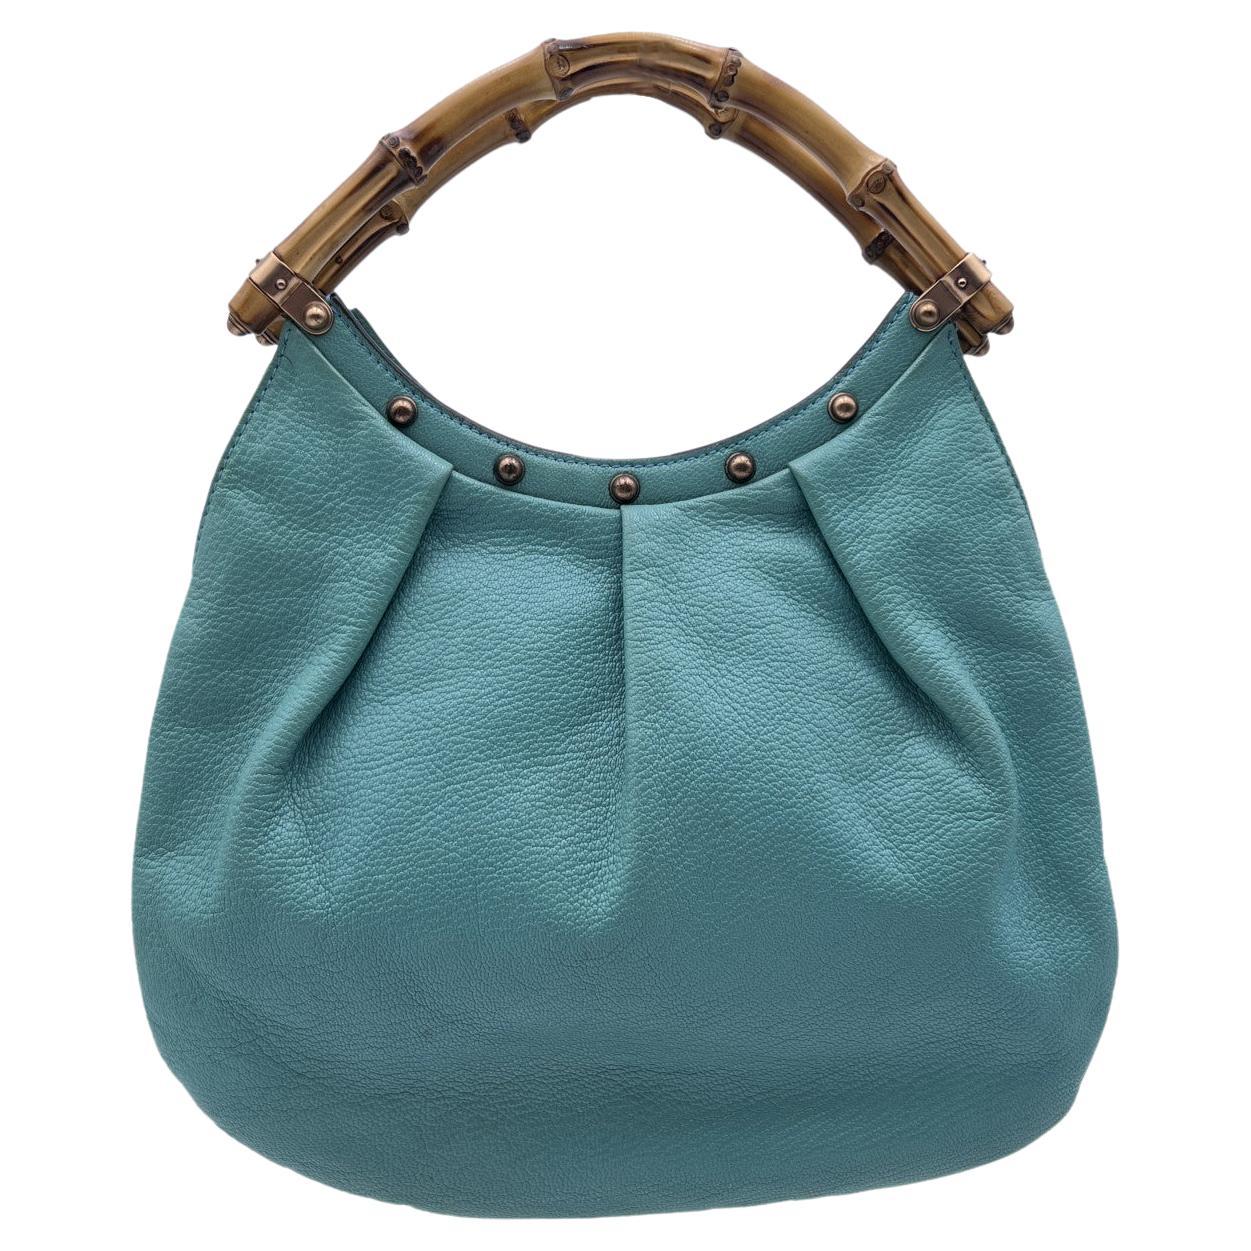 Gucci Turquoise Leather Bamboo Studded Handbag Tote Bag